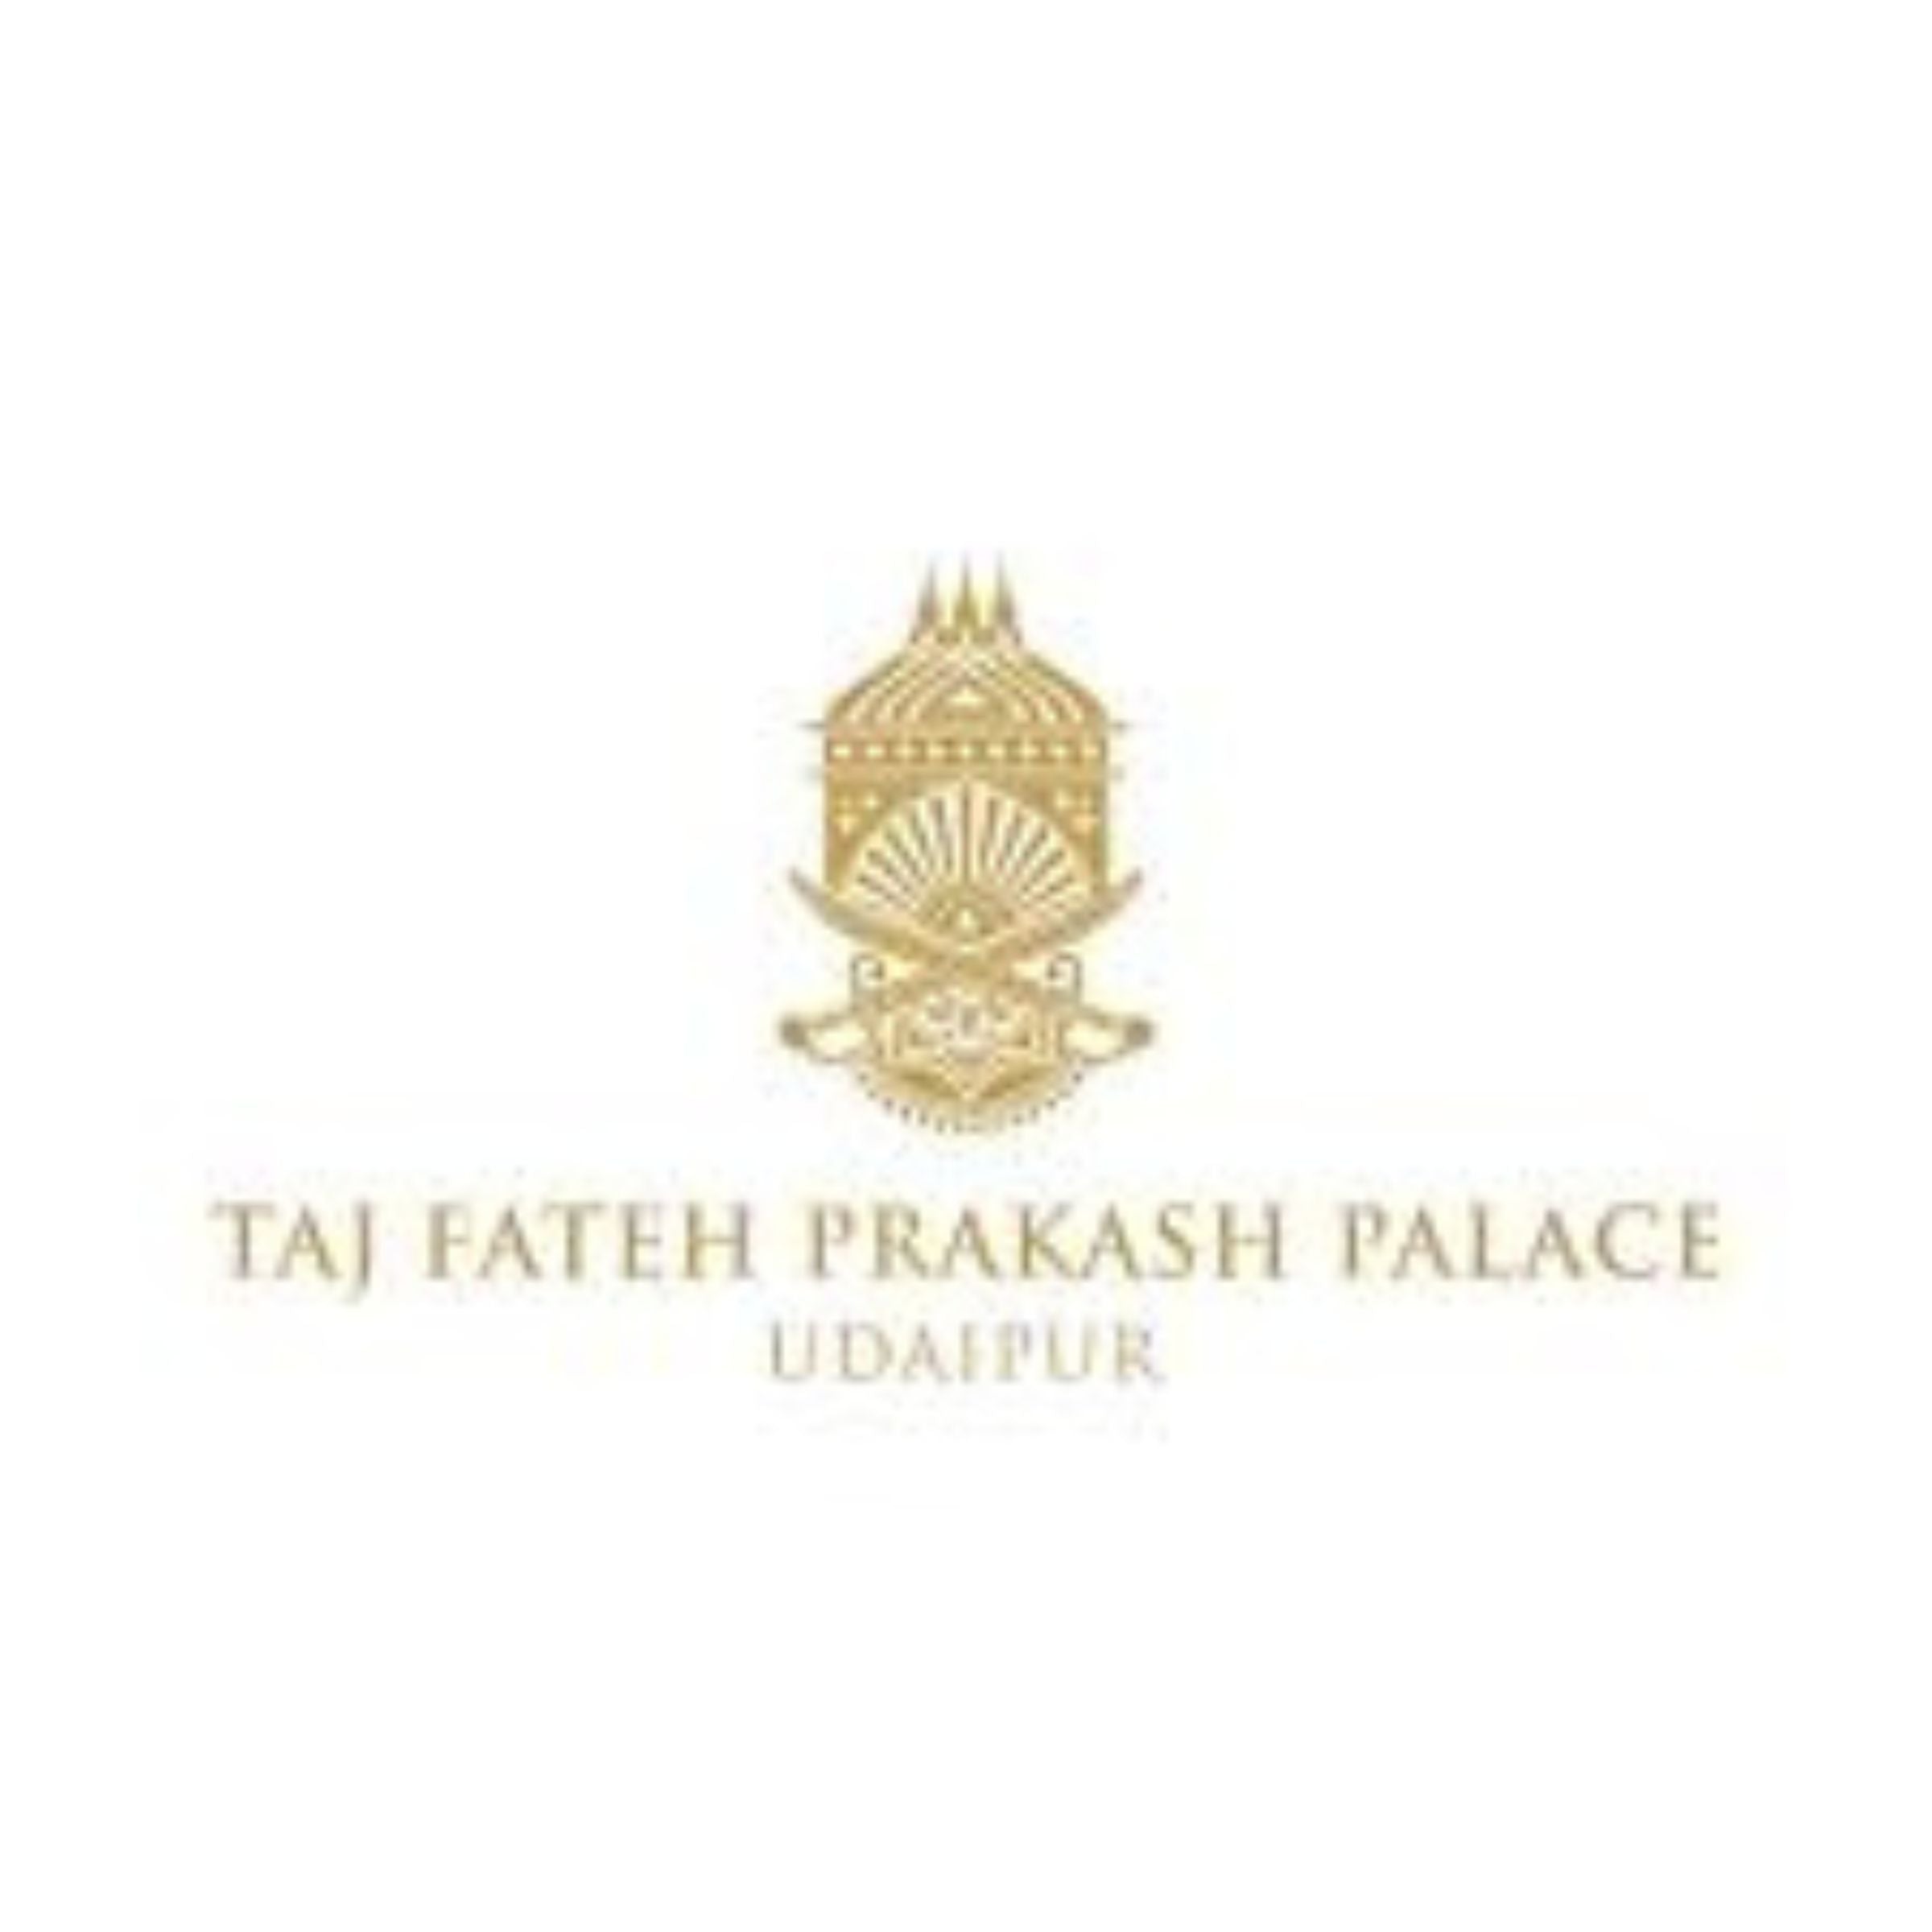 Taj Fateh Prakash Palace Logo